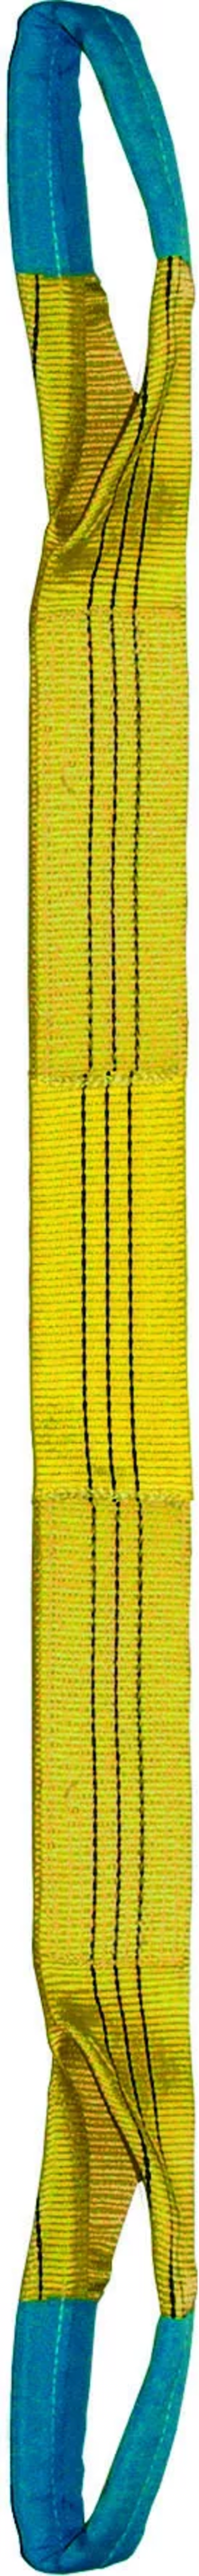 Élingue sangle double 90 mm cmu 3 t jaune boucles repliées lg. 3 m LEVAC - 4822C30